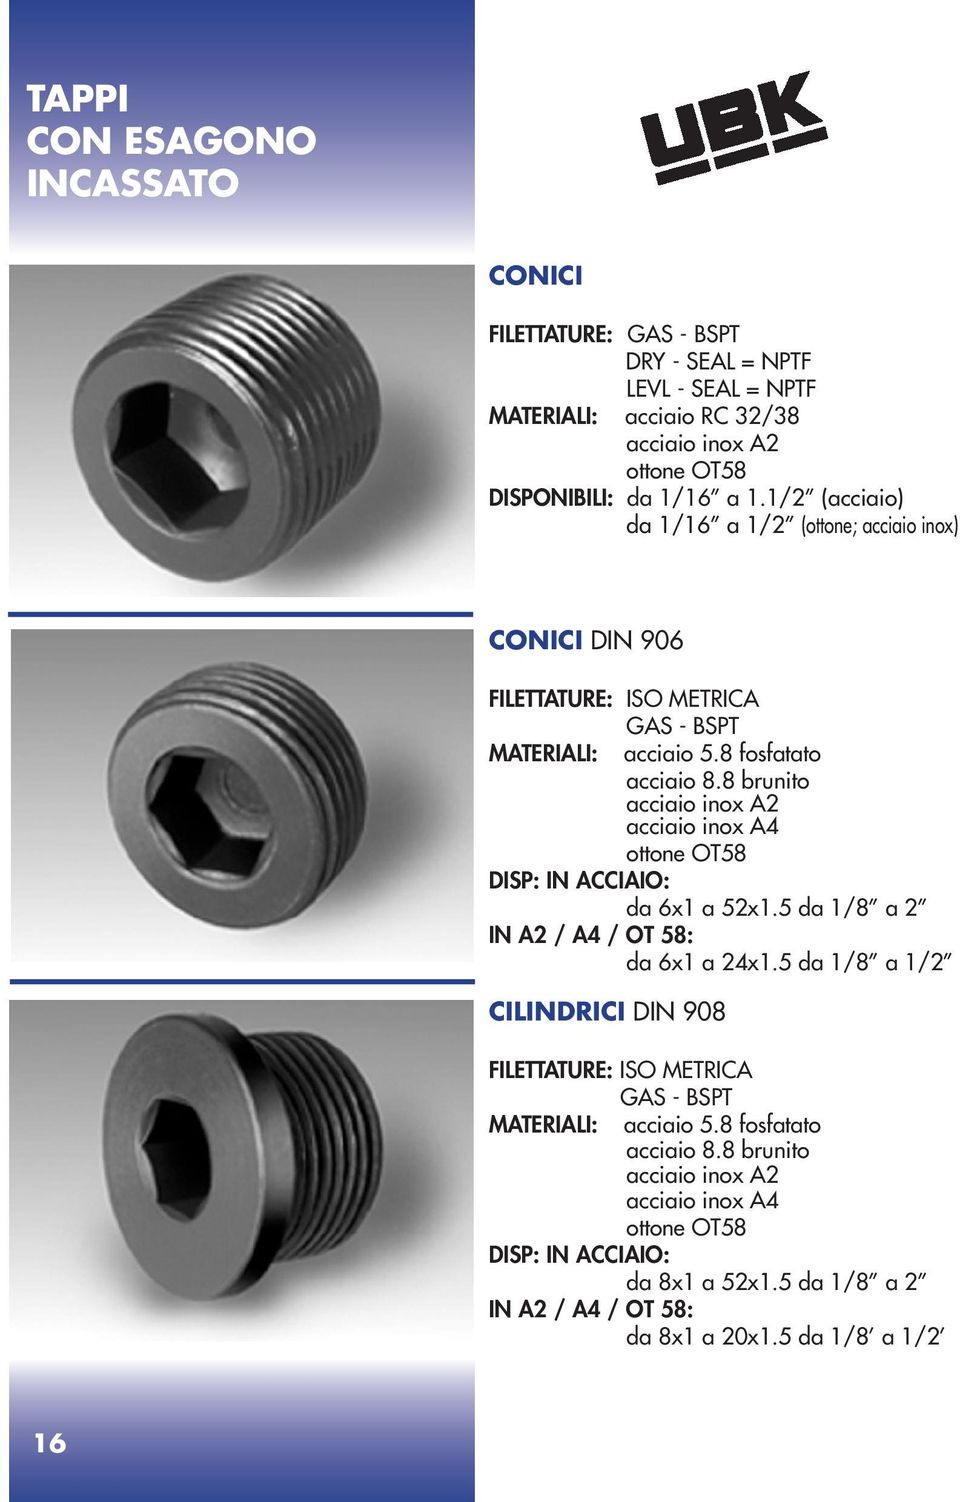 8 brunito acciaio inox A2 acciaio inox A4 ottone OT58 DISP: IN ACCIAIO: da 6x1 a 52x1.5 da 1/8 a 2 IN A2 / A4 / OT 58: da 6x1 a 24x1.